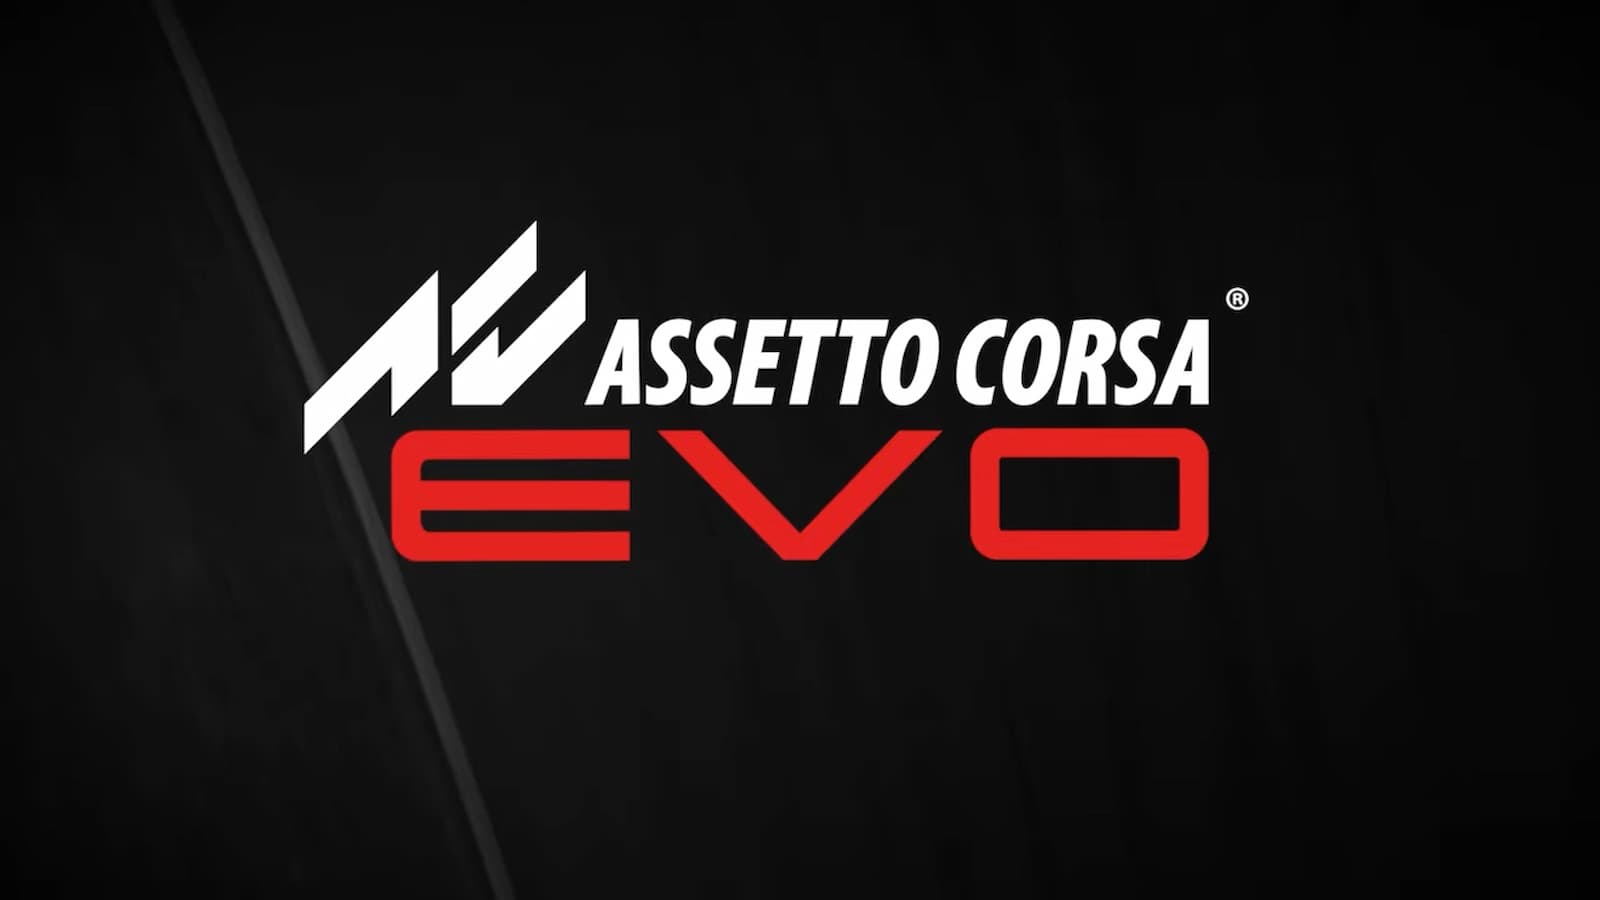 Вы сейчас просматриваете Assetto Corsa Evo: окно релиза, трейлер и многое другое